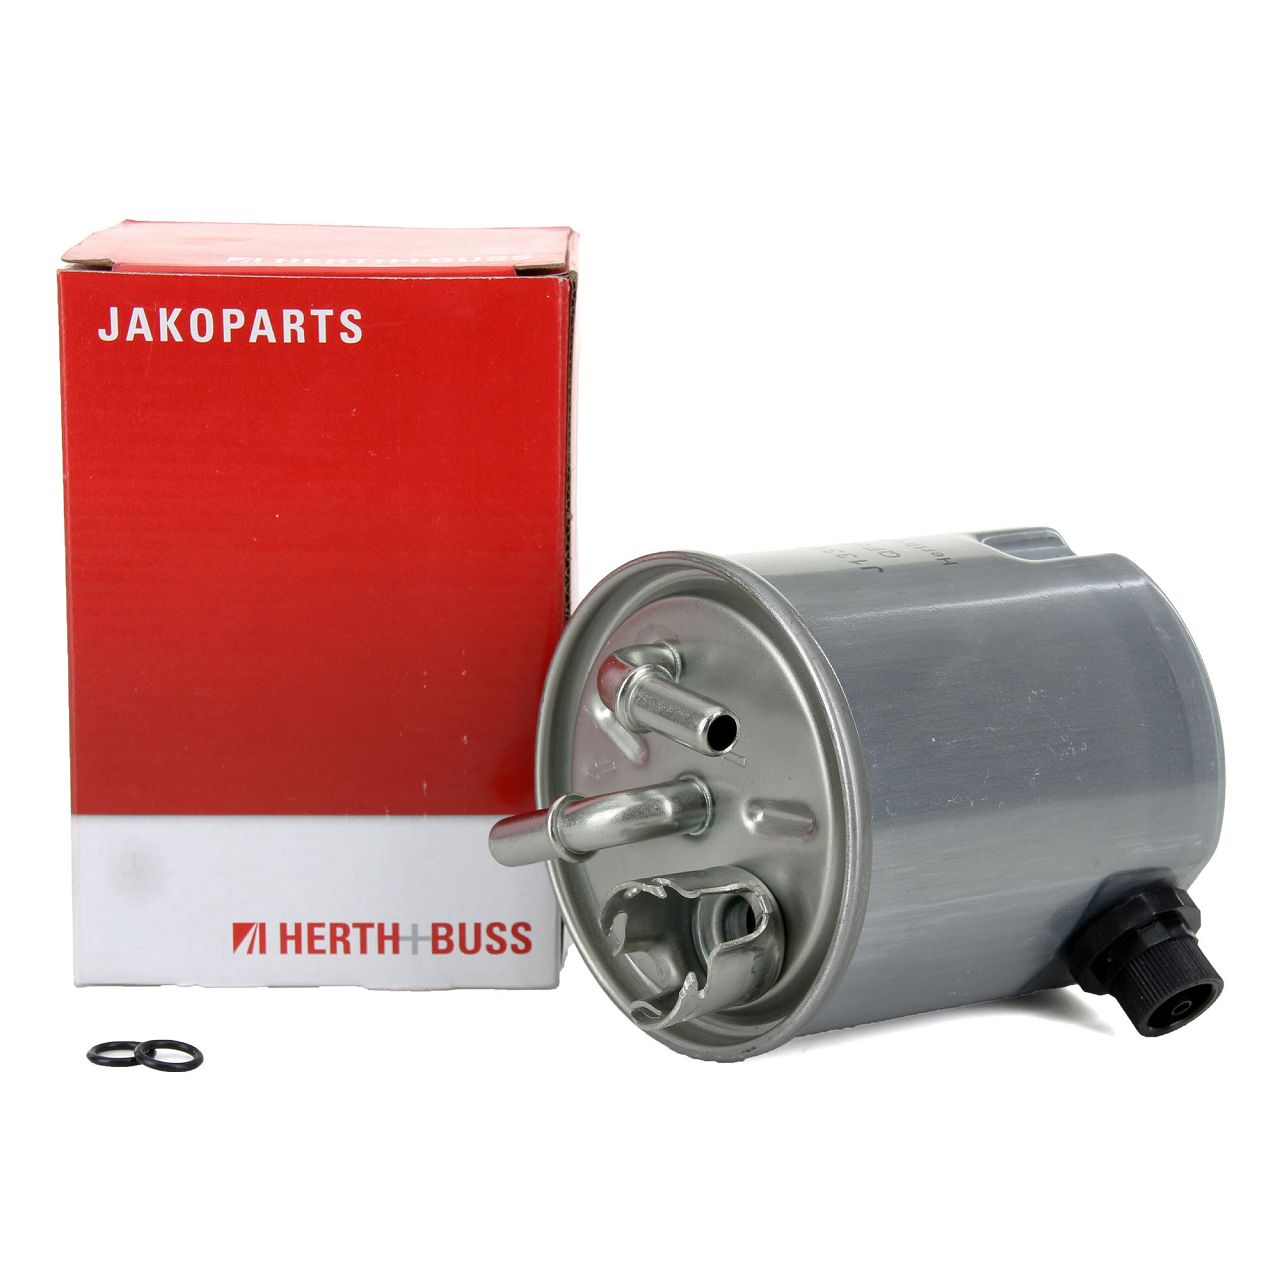 HERTH+BUSS JAKOPARTS Dieselfilter für NISSAN MURANO QASHQAI X-TRAIL 1.5 2.0 dCi